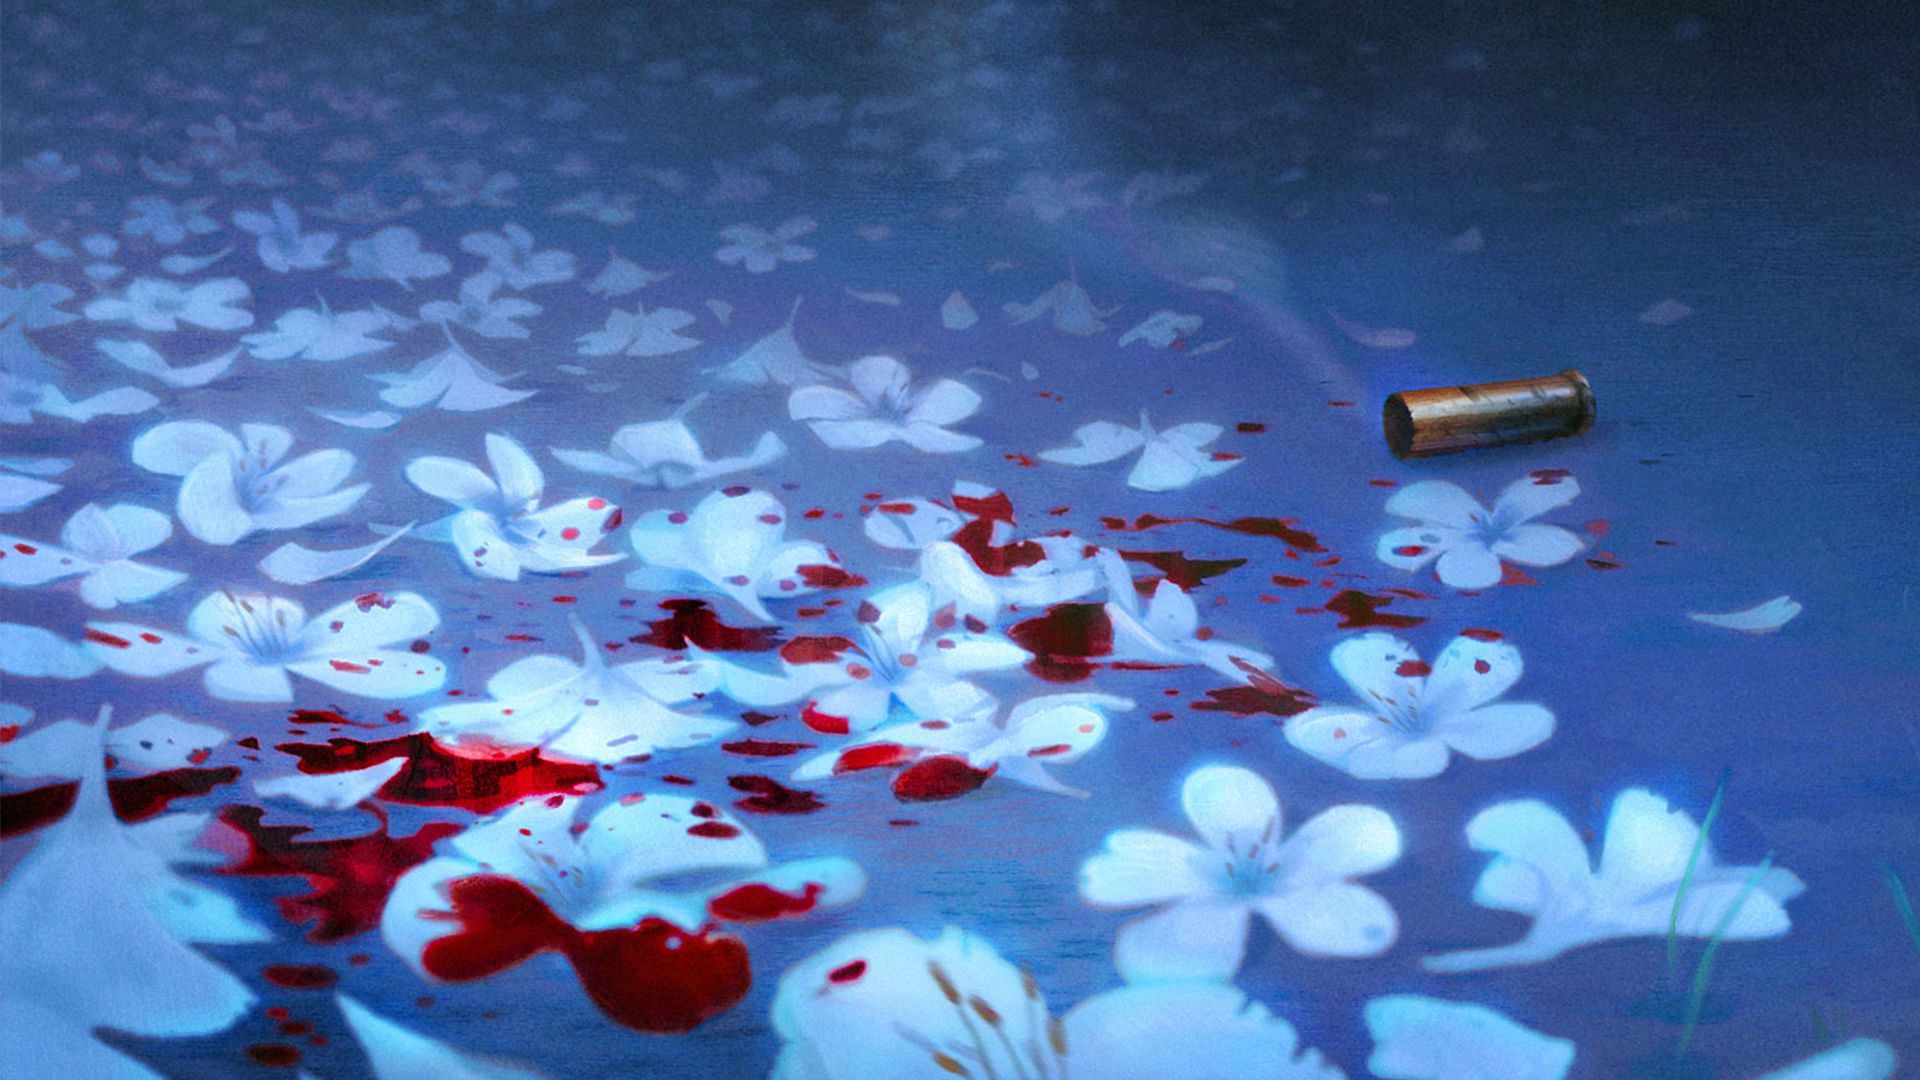 گلوله و خون روی گل های سفید رنگ در انیمیشن The Night Gardener